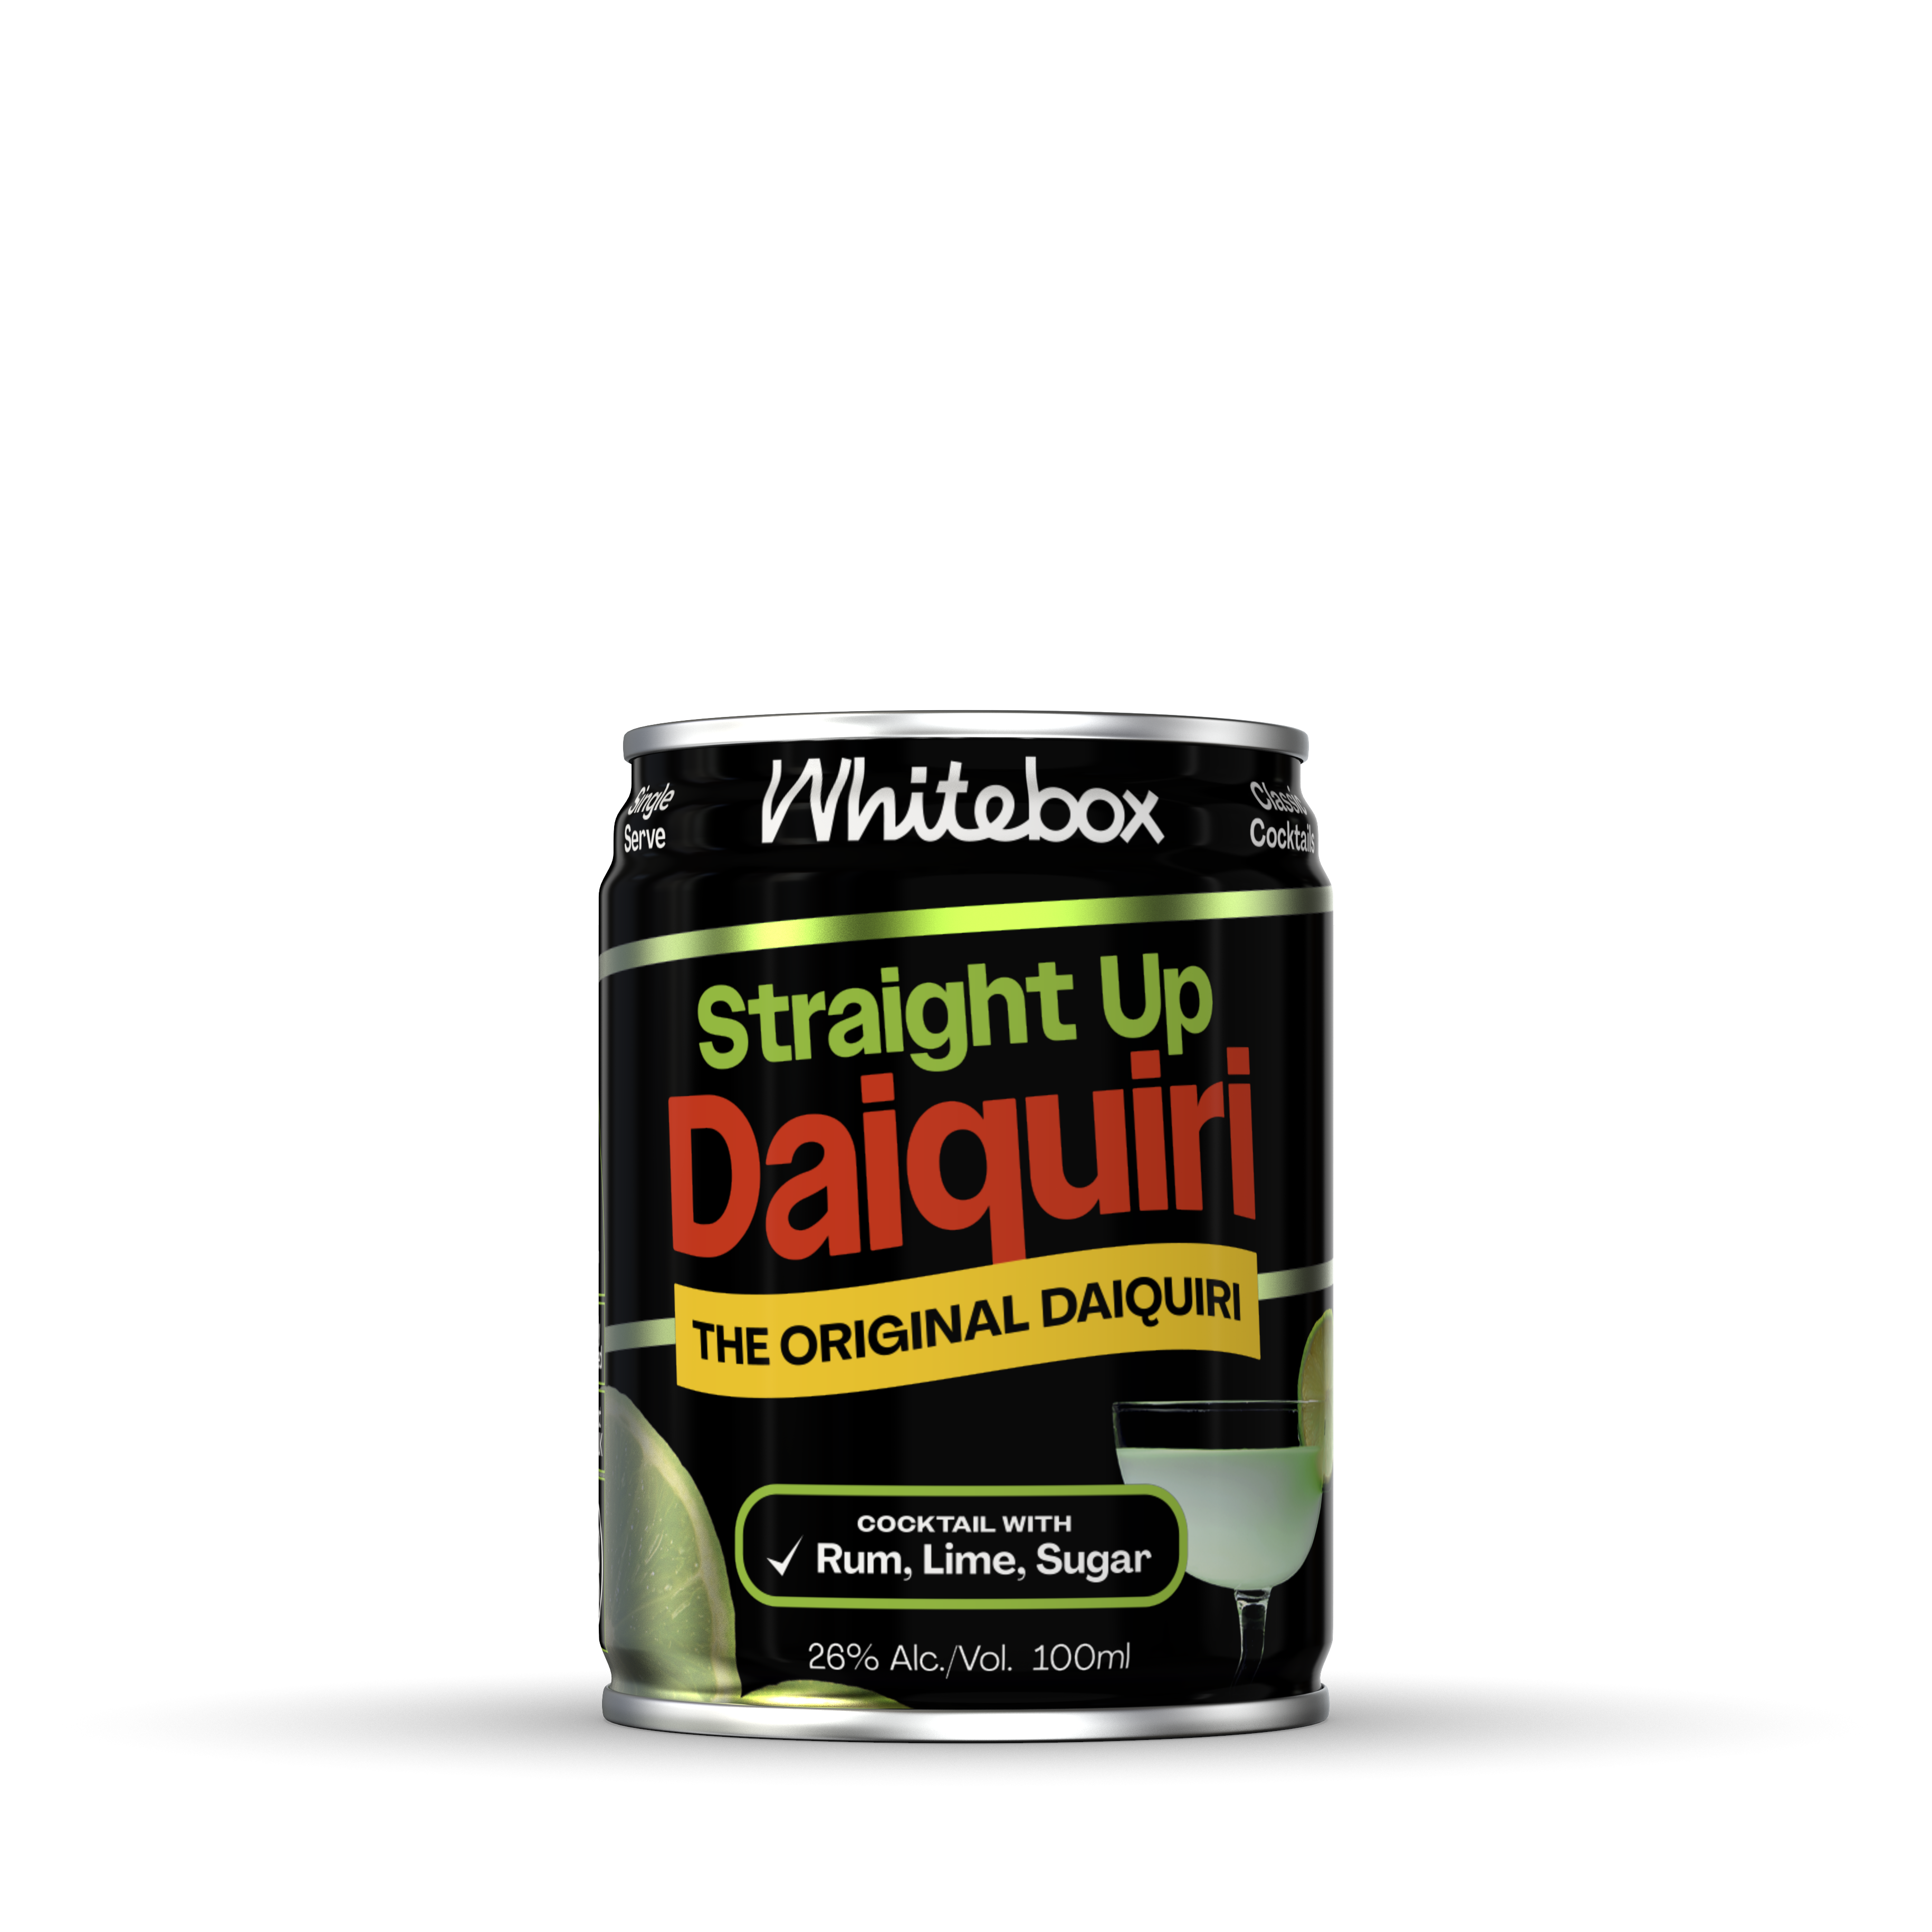 Straight Up Daiquiri